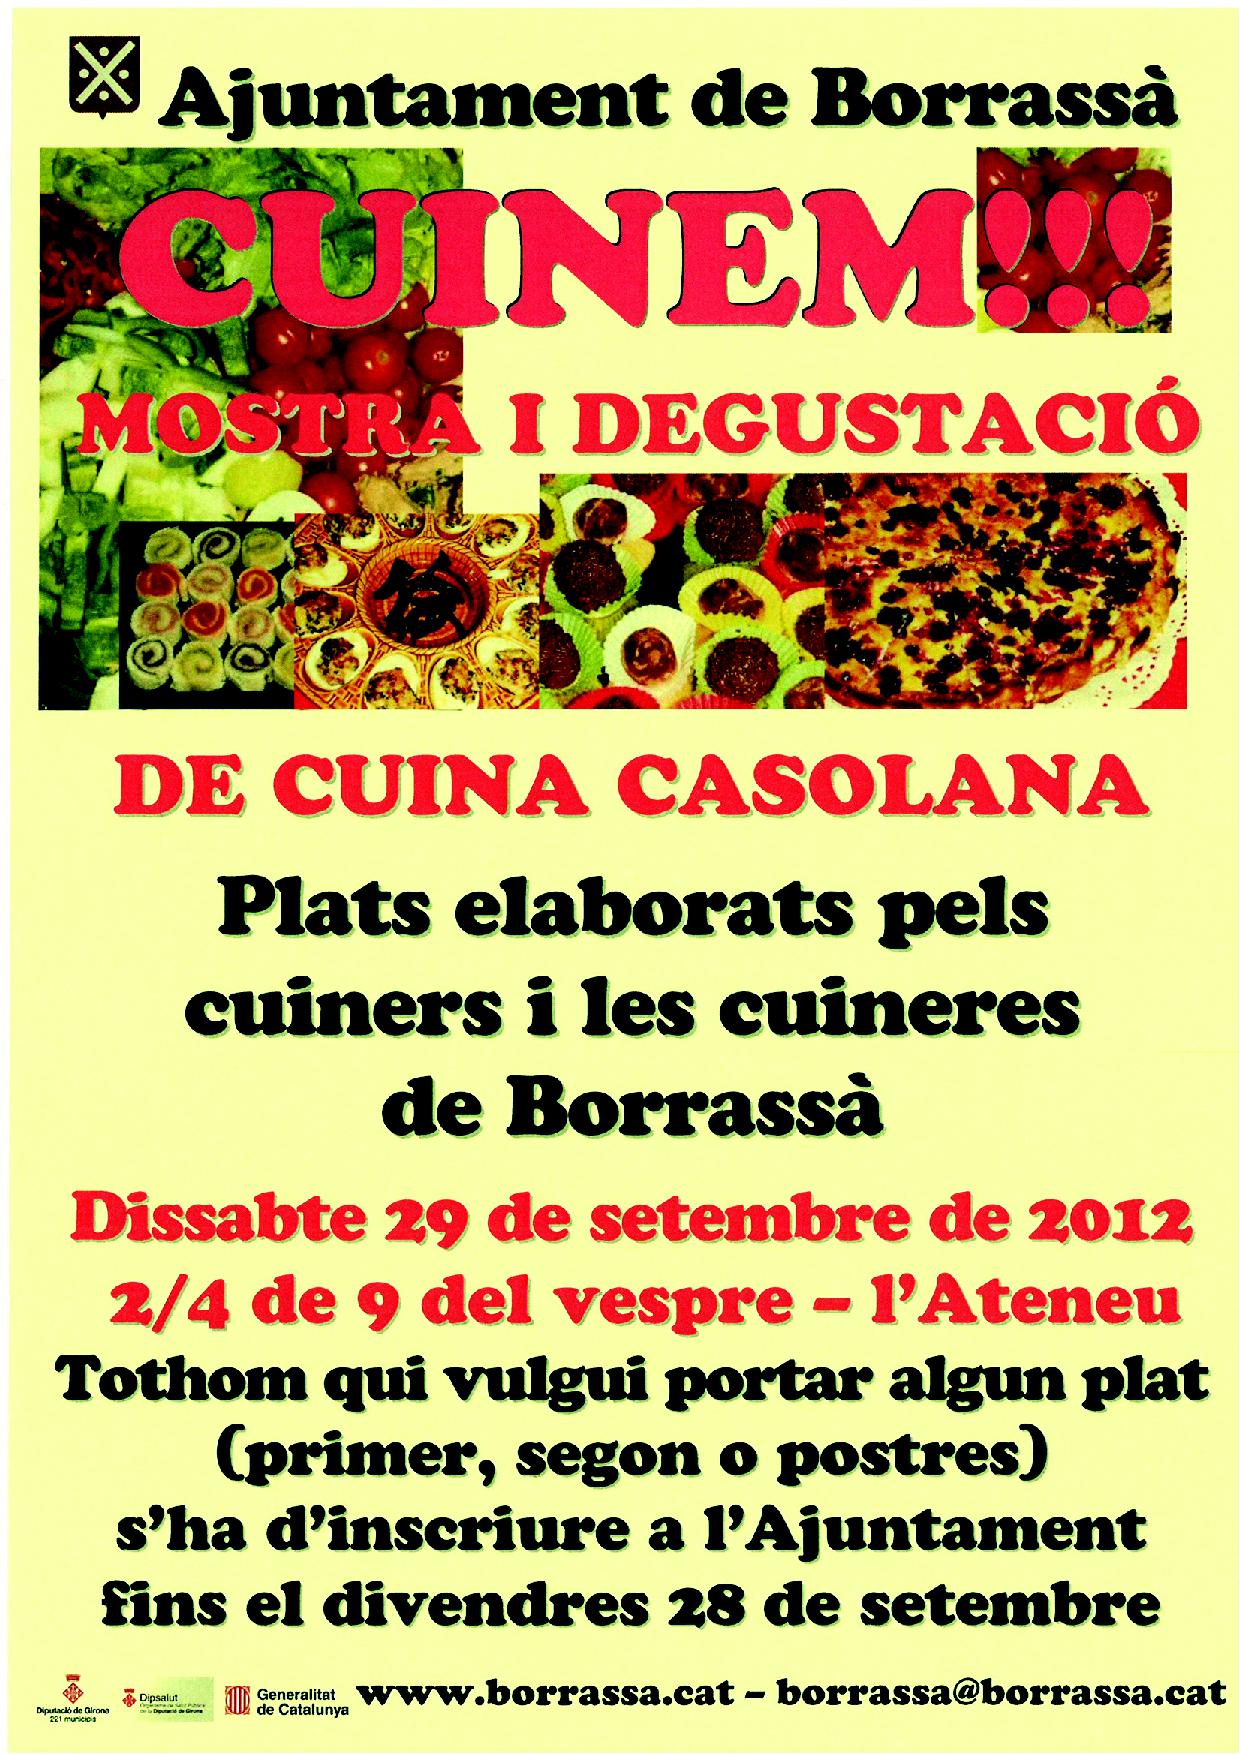 El proper dissabte 29 de setembre tindrà lloc una nova edició del Cuinem!!!, on hi haurà una mostra i degustació de cuina casolana amb plats preparats pels cuiners i les cuineres de Borrassà.